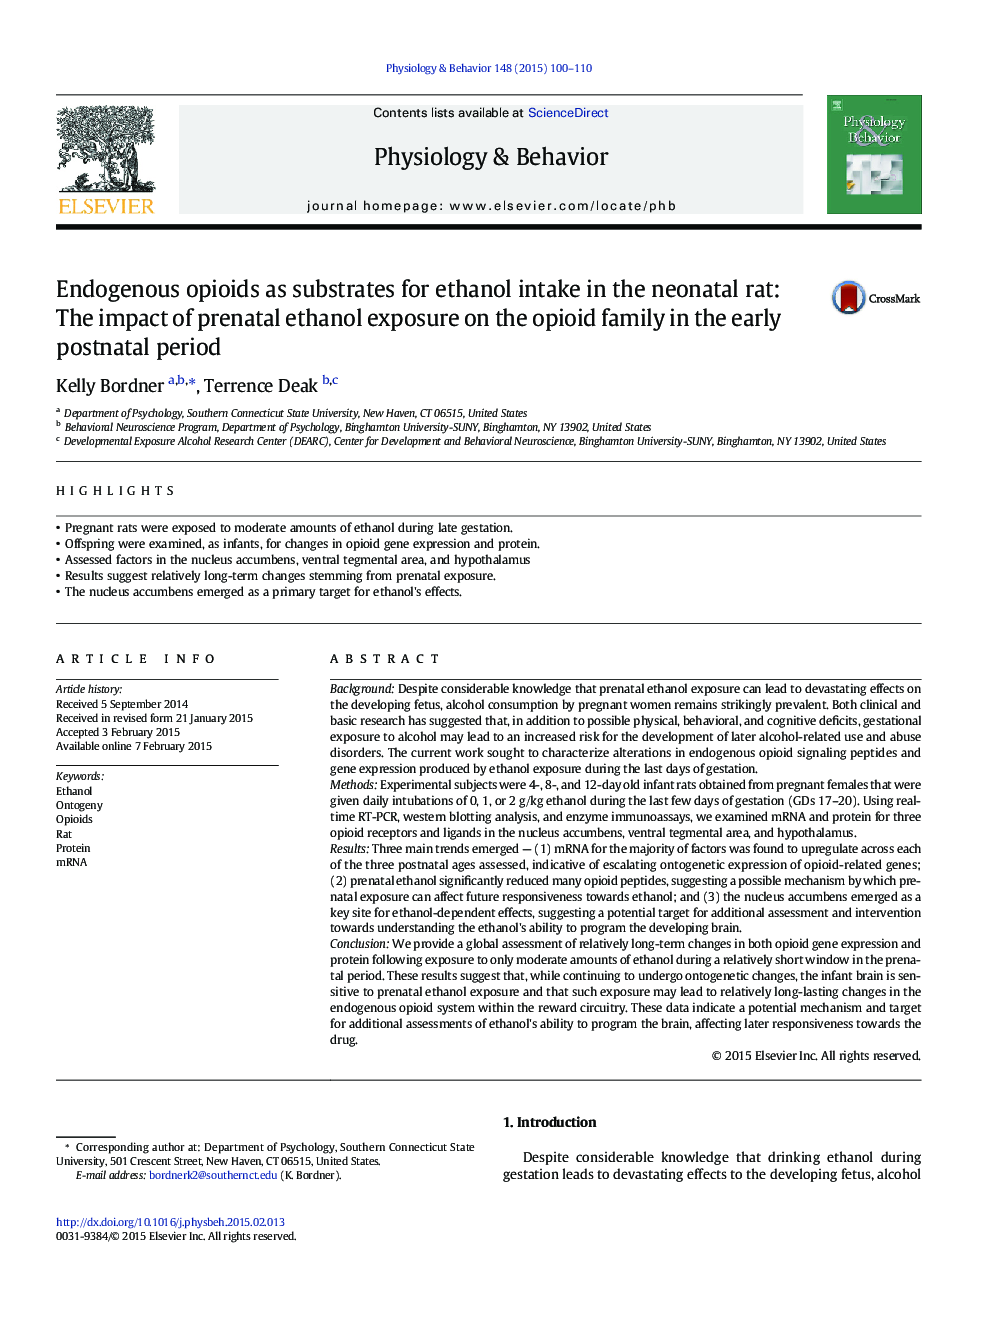 اپیوئید آندوژن بهعنوان زیرمجموعه مصرف اتانول در موش نوزادان: تاثیر عوارض پیش از تولد اتانول در خانواده اپیوئید در دوره اول بعد از تولد 